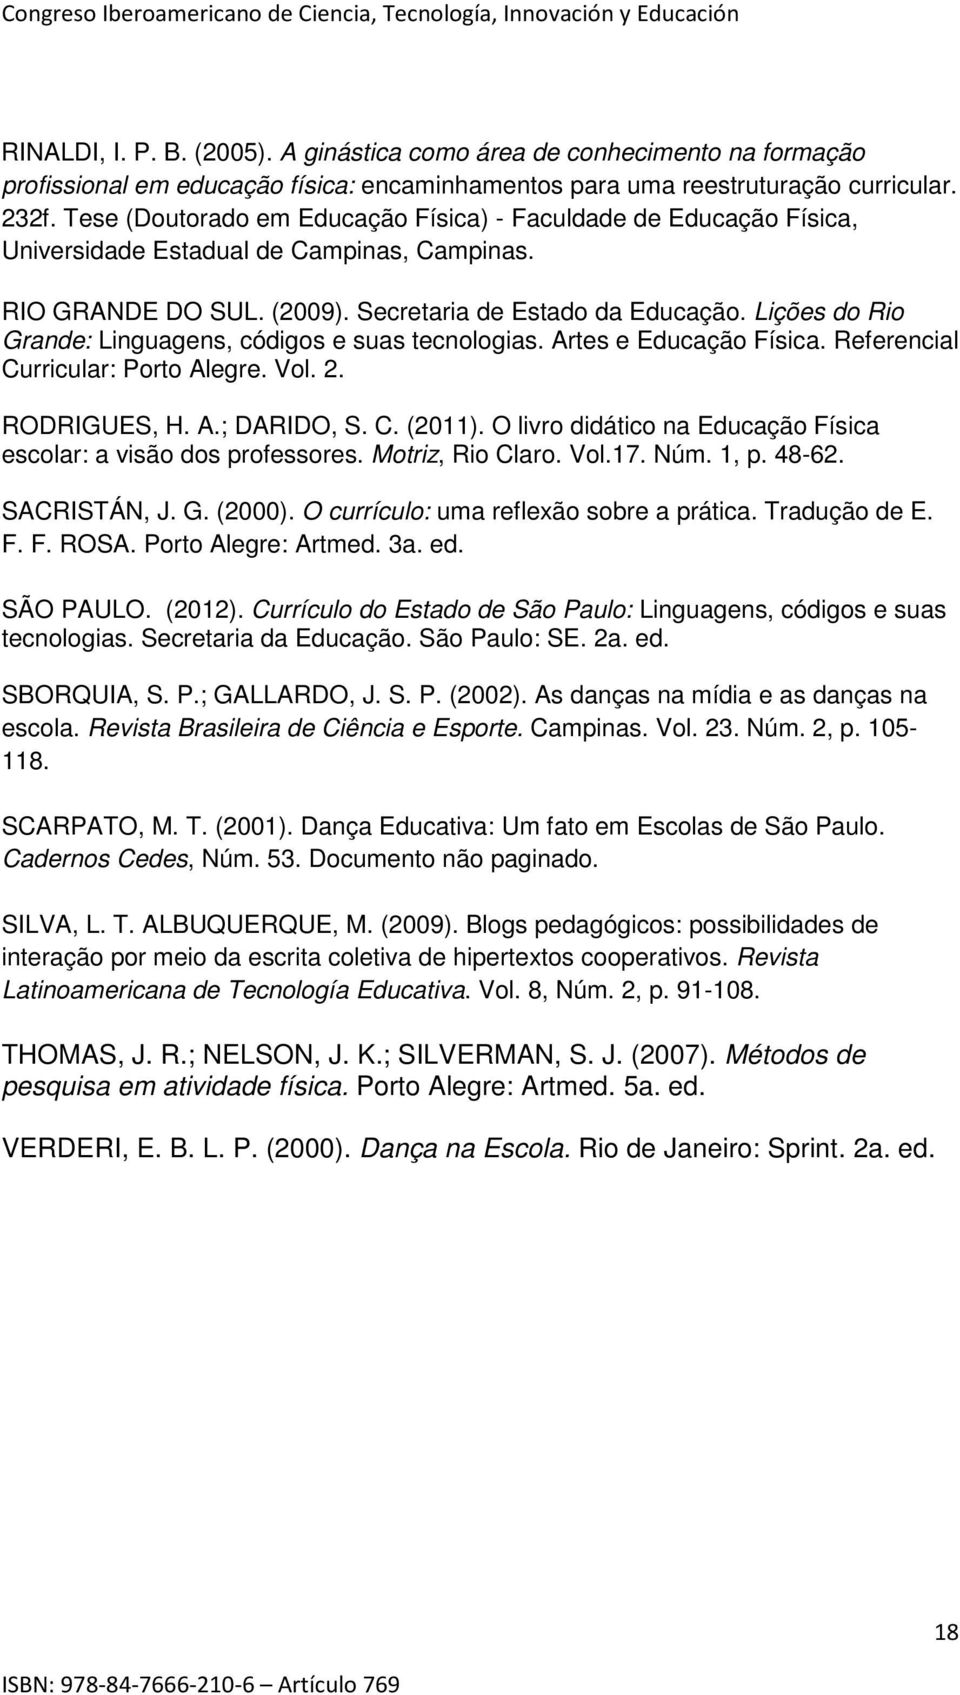 Lições do Rio Grande: Linguagens, códigos e suas tecnologias. Artes e Educação Física. Referencial Curricular: Porto Alegre. Vol. 2. RODRIGUES, H. A.; DARIDO, S. C. (2011).